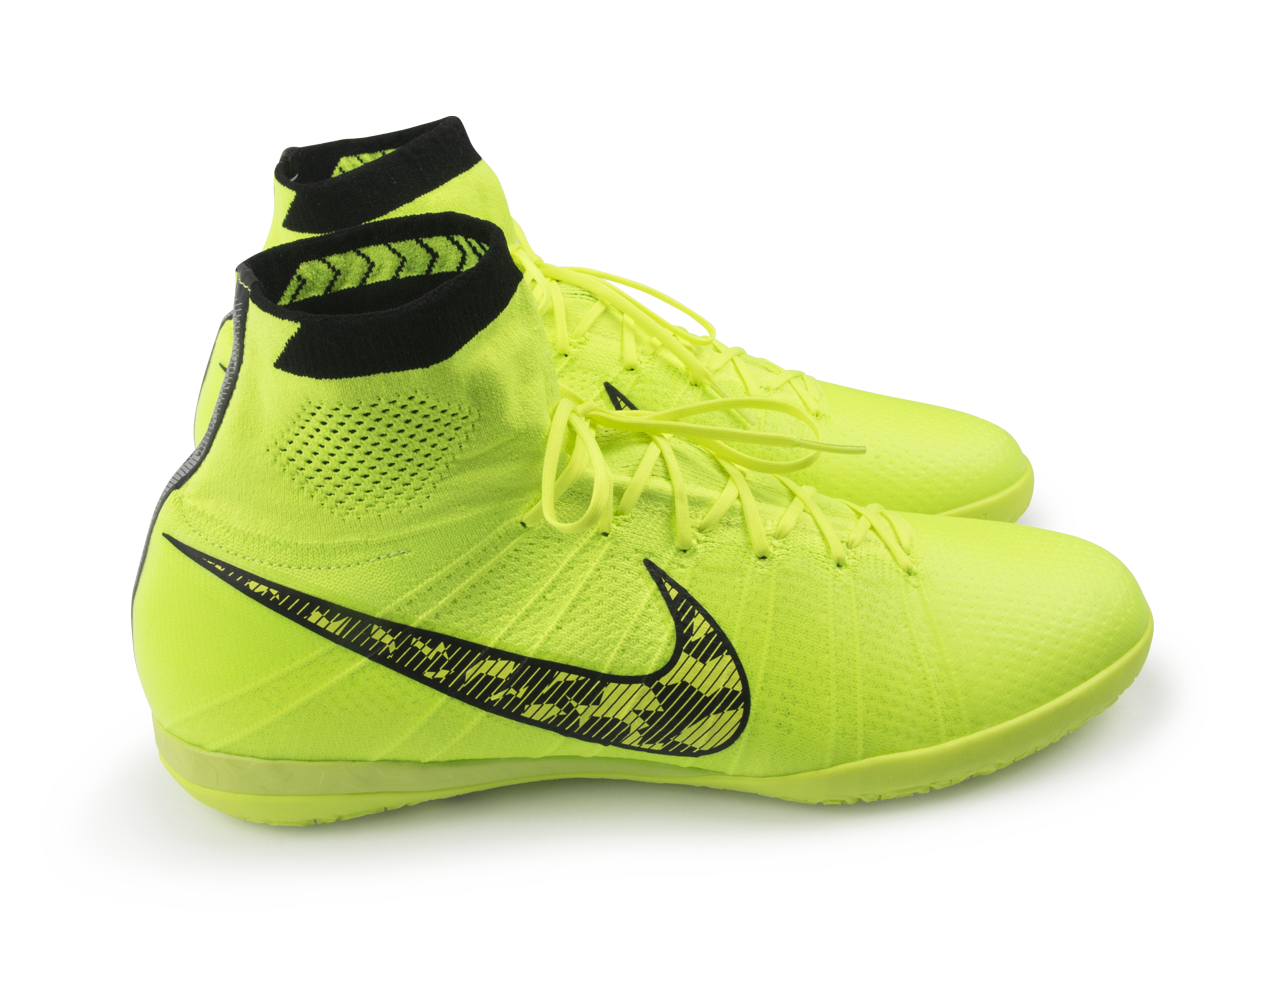 Nike Men's Elastico Superfly Indoor Soccer Shoes Volt/Black/Flash Lime